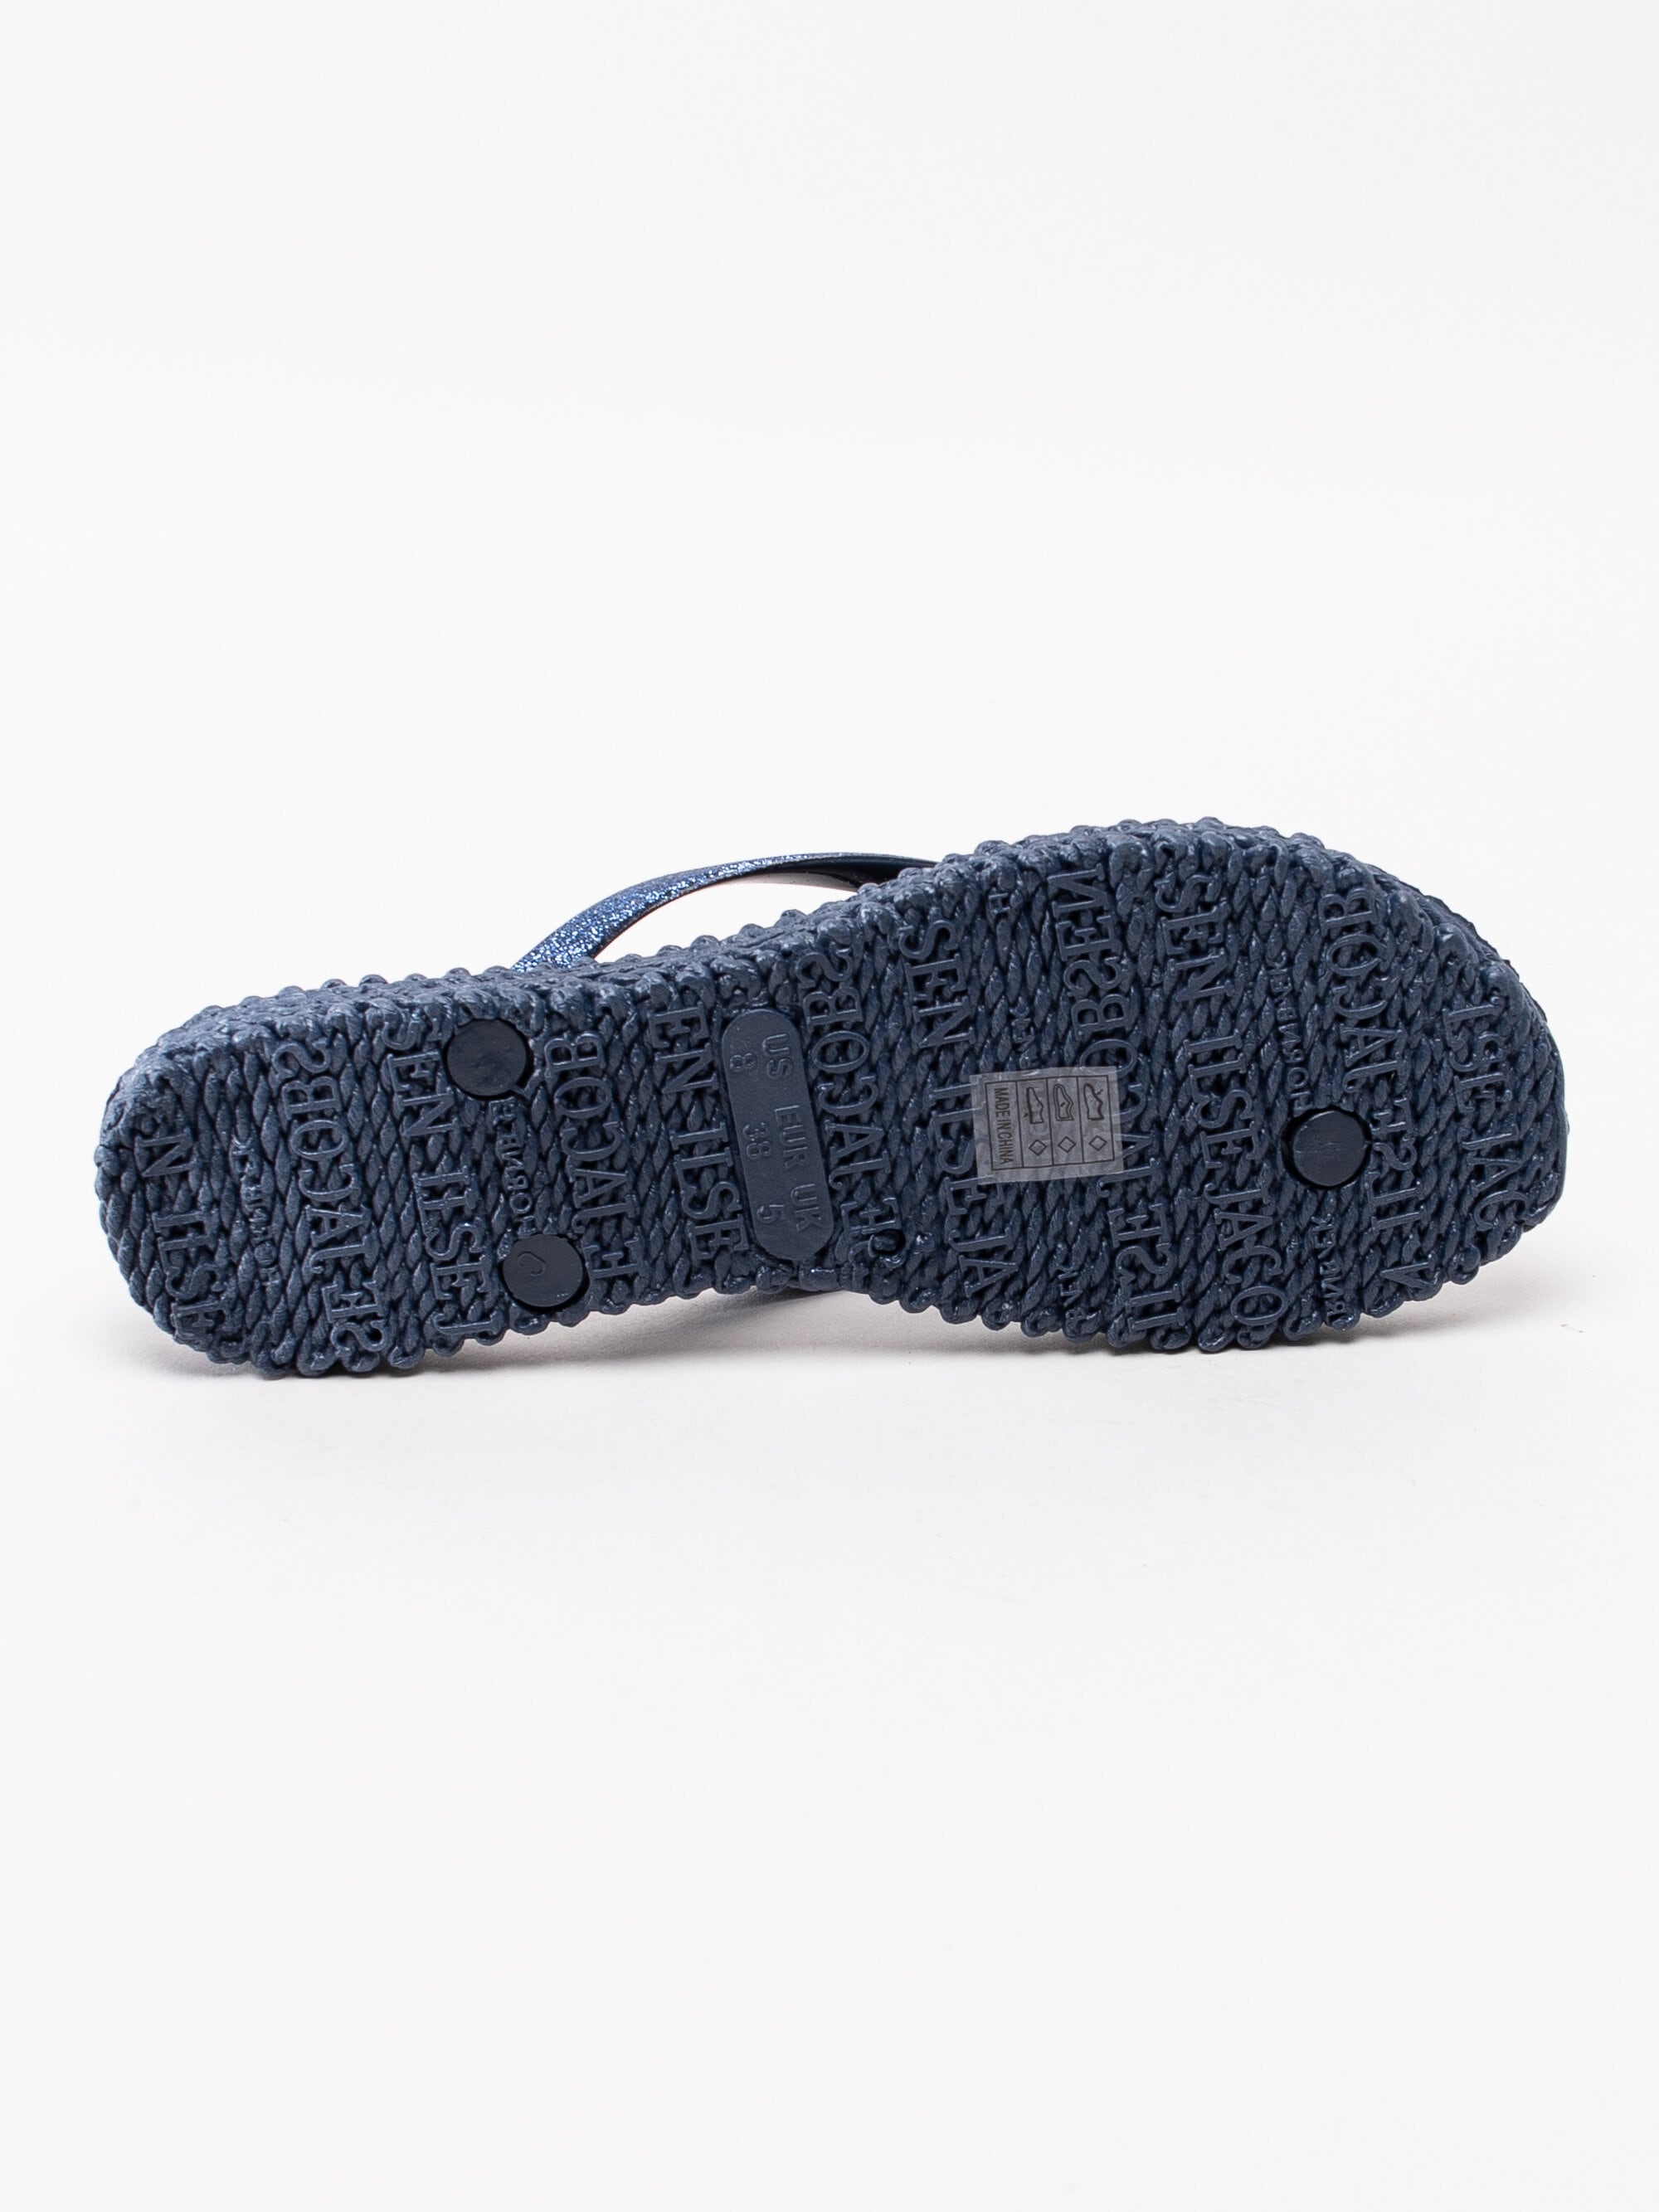 Ilse Jacobsen - Cheerful - Mörkblå flip flops sandaler